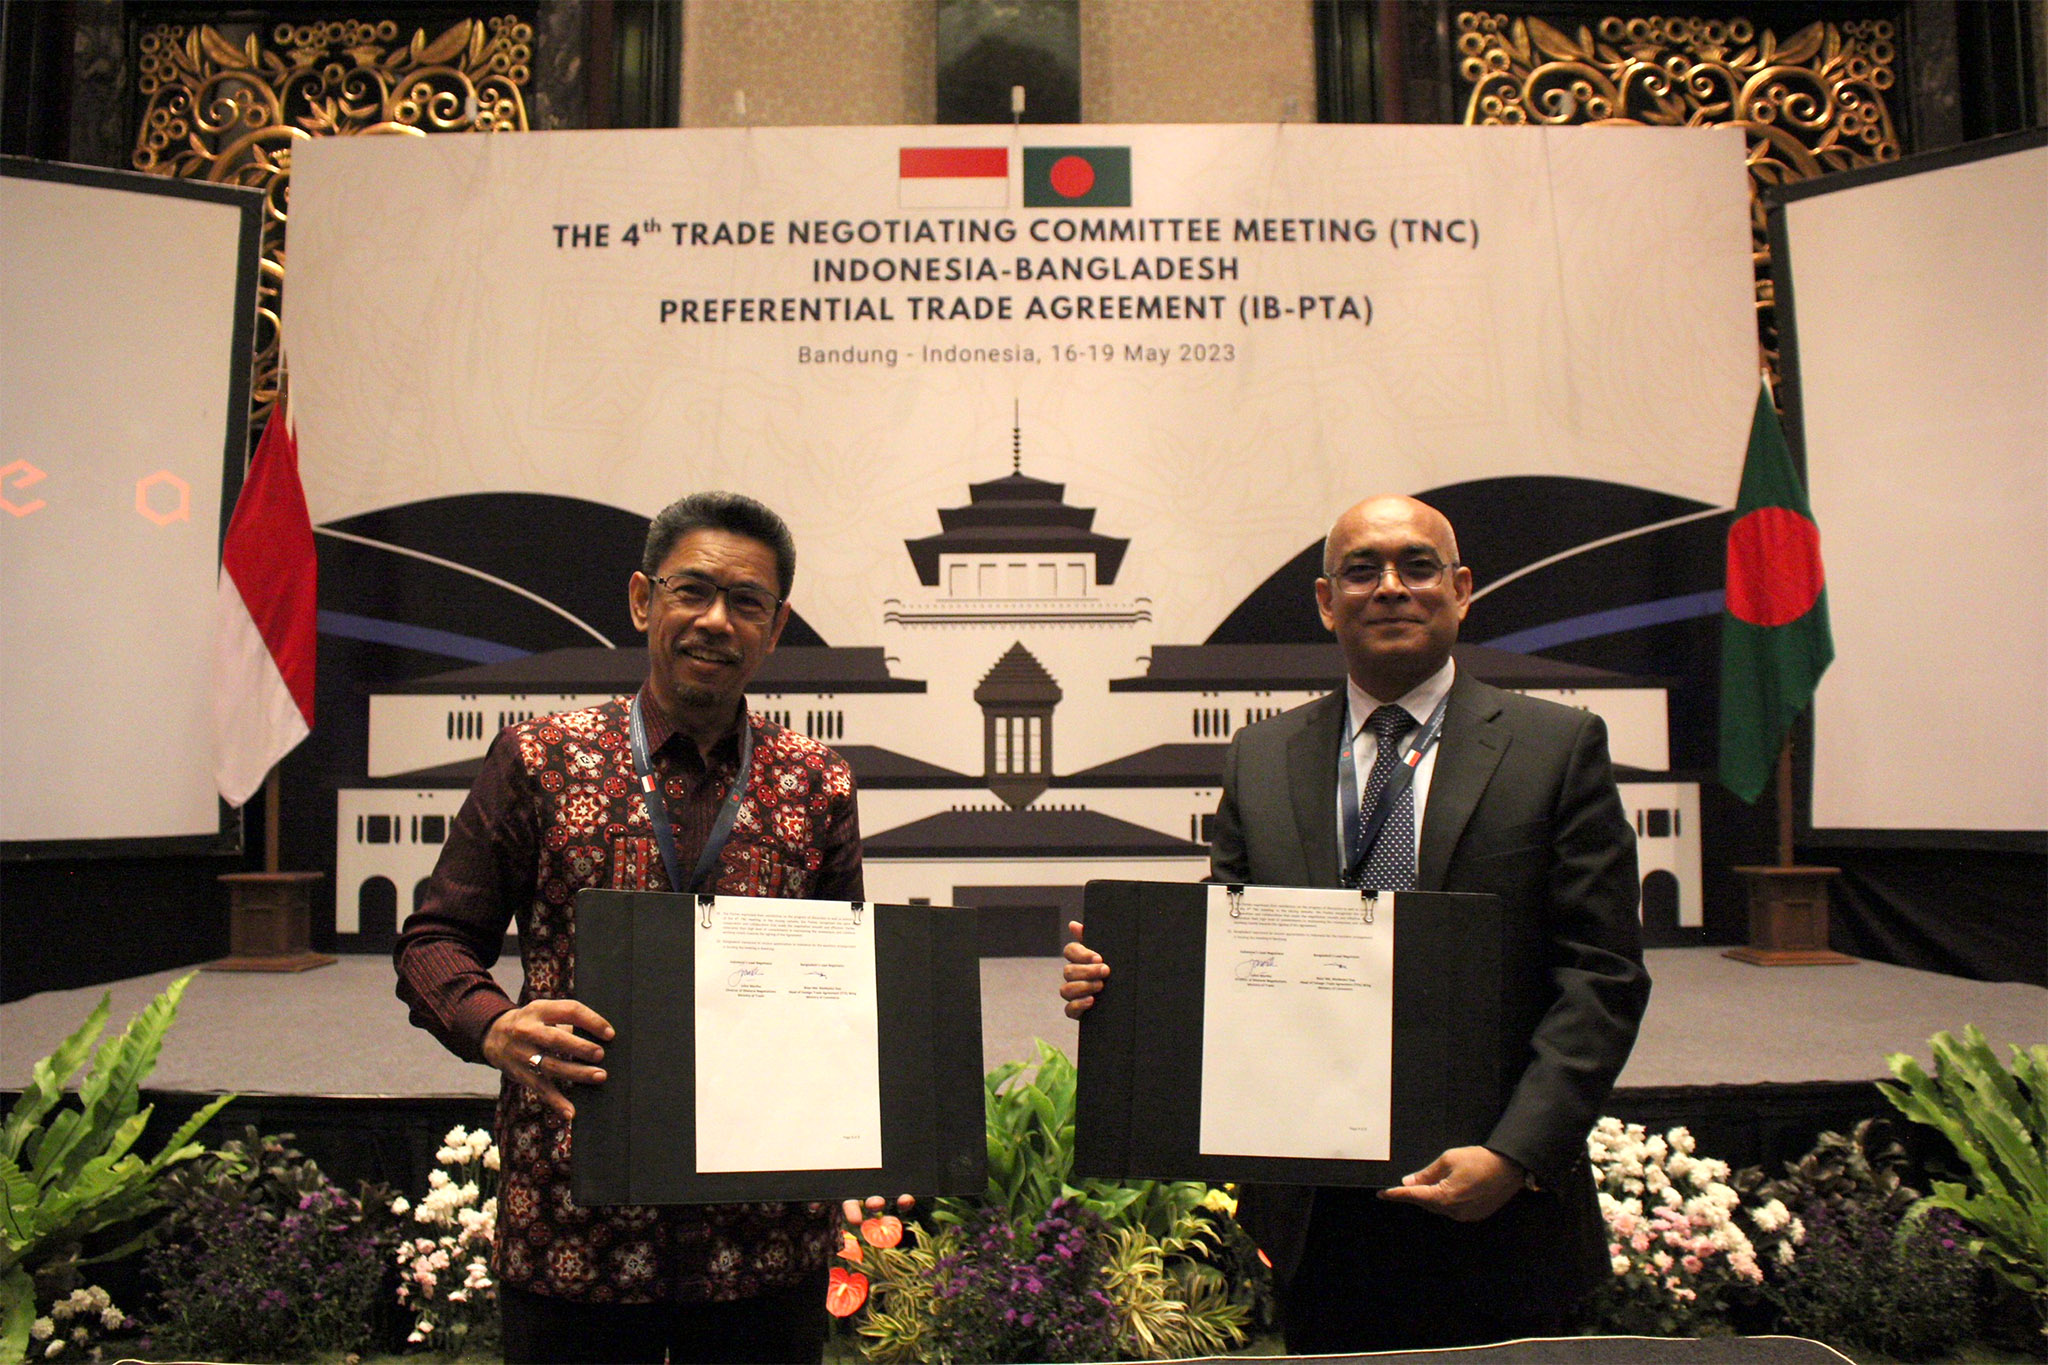 Delegasi kedua negara akan kembali bertemu pada Juli 2023 untuk memfinalisasi akses pasar dan teks perjanjian. Indonesia dan Bangladesh menargetkan penandatanganan IB-PTA dapat dilakukan pada akhir Agustus atau awal September 2023.